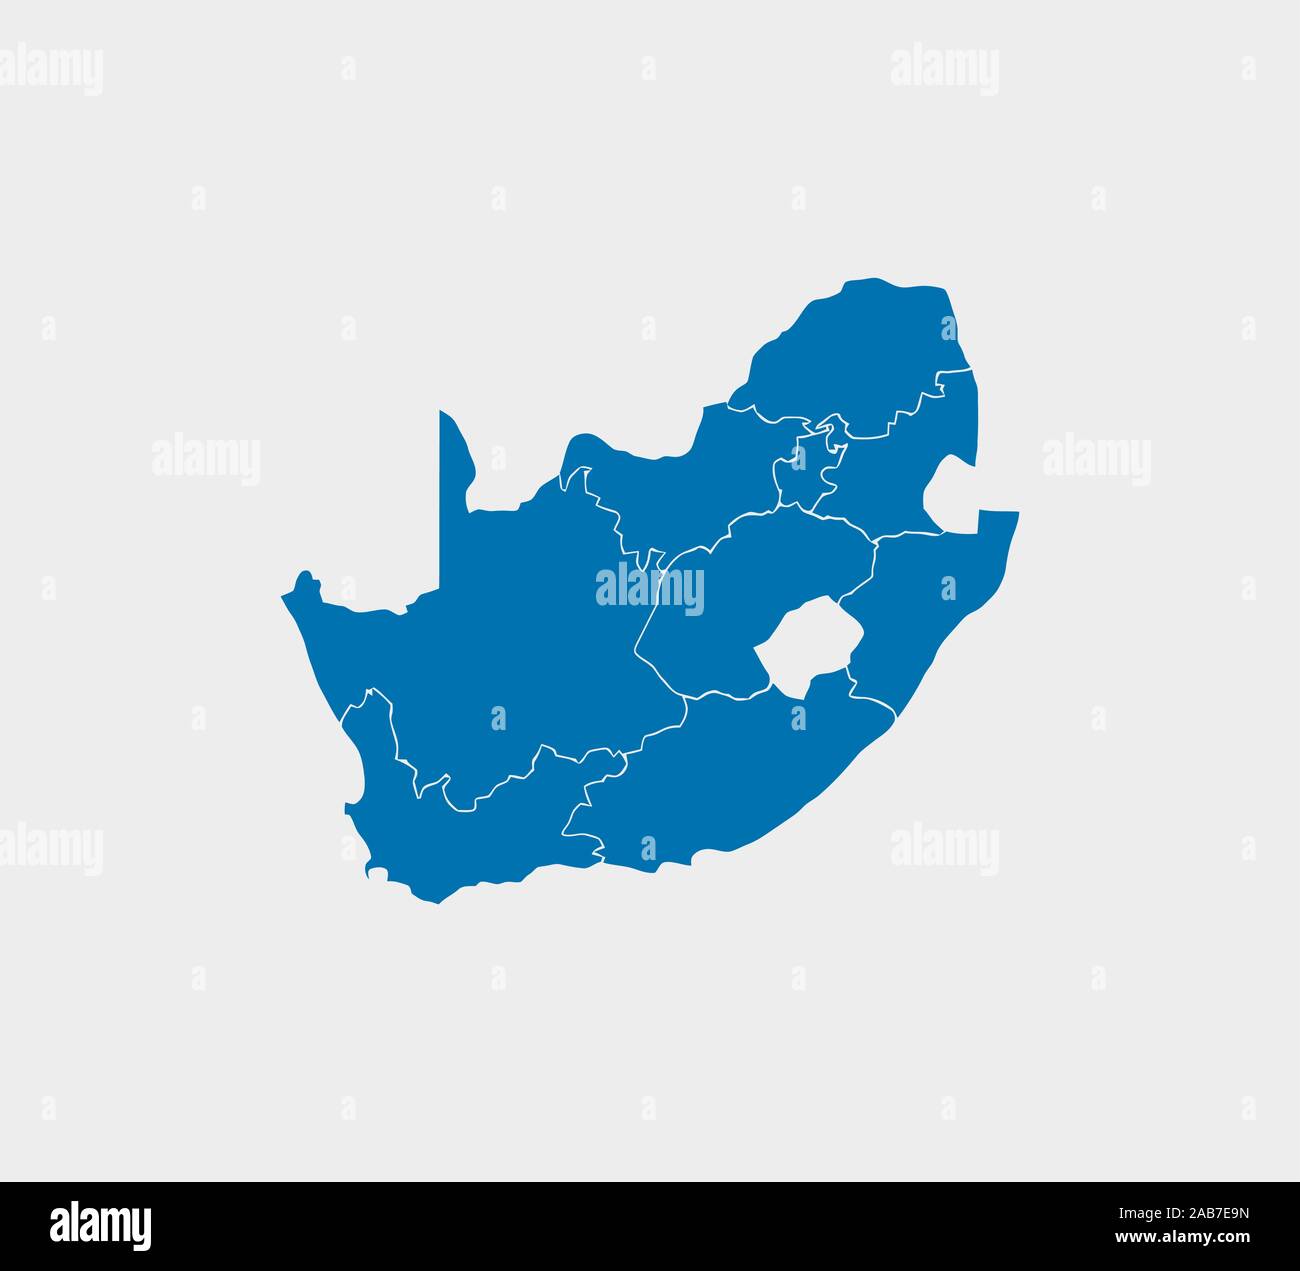 Südafrika Karte, Grenze Karte. Vector Illustration. Stock Vektor